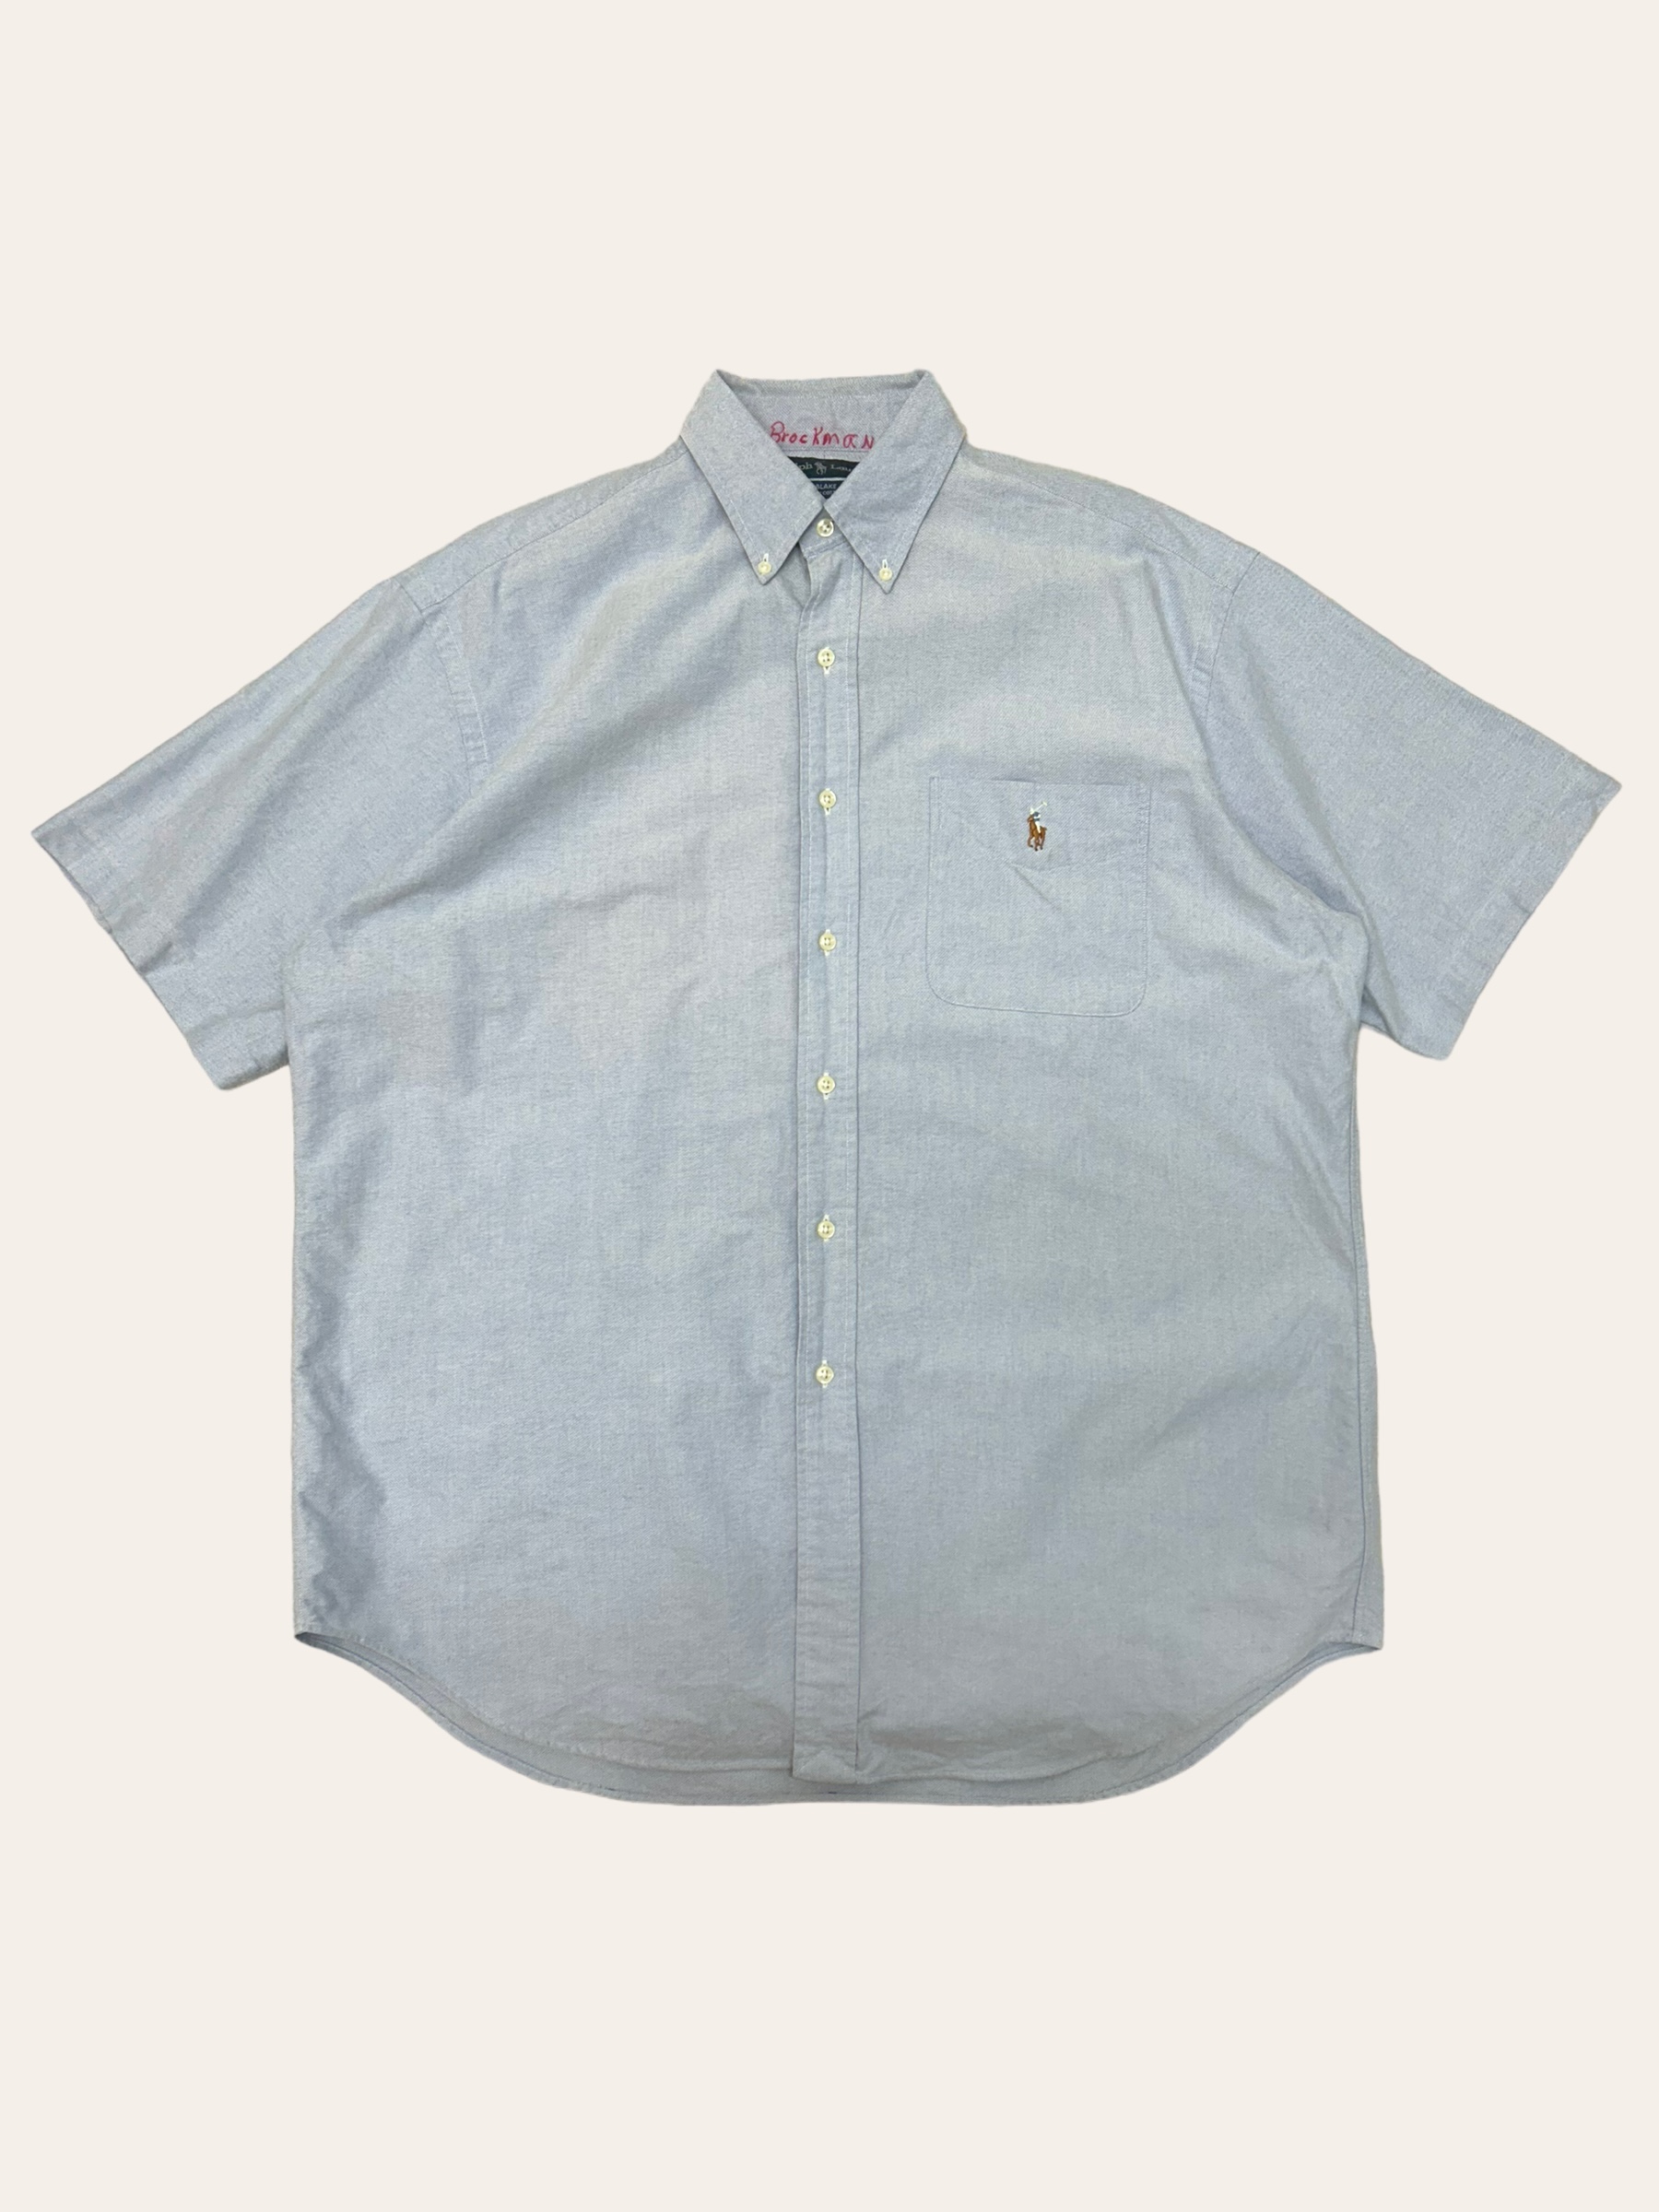 (From USA)Polo ralph lauren blue oxford short sleeve shirt L